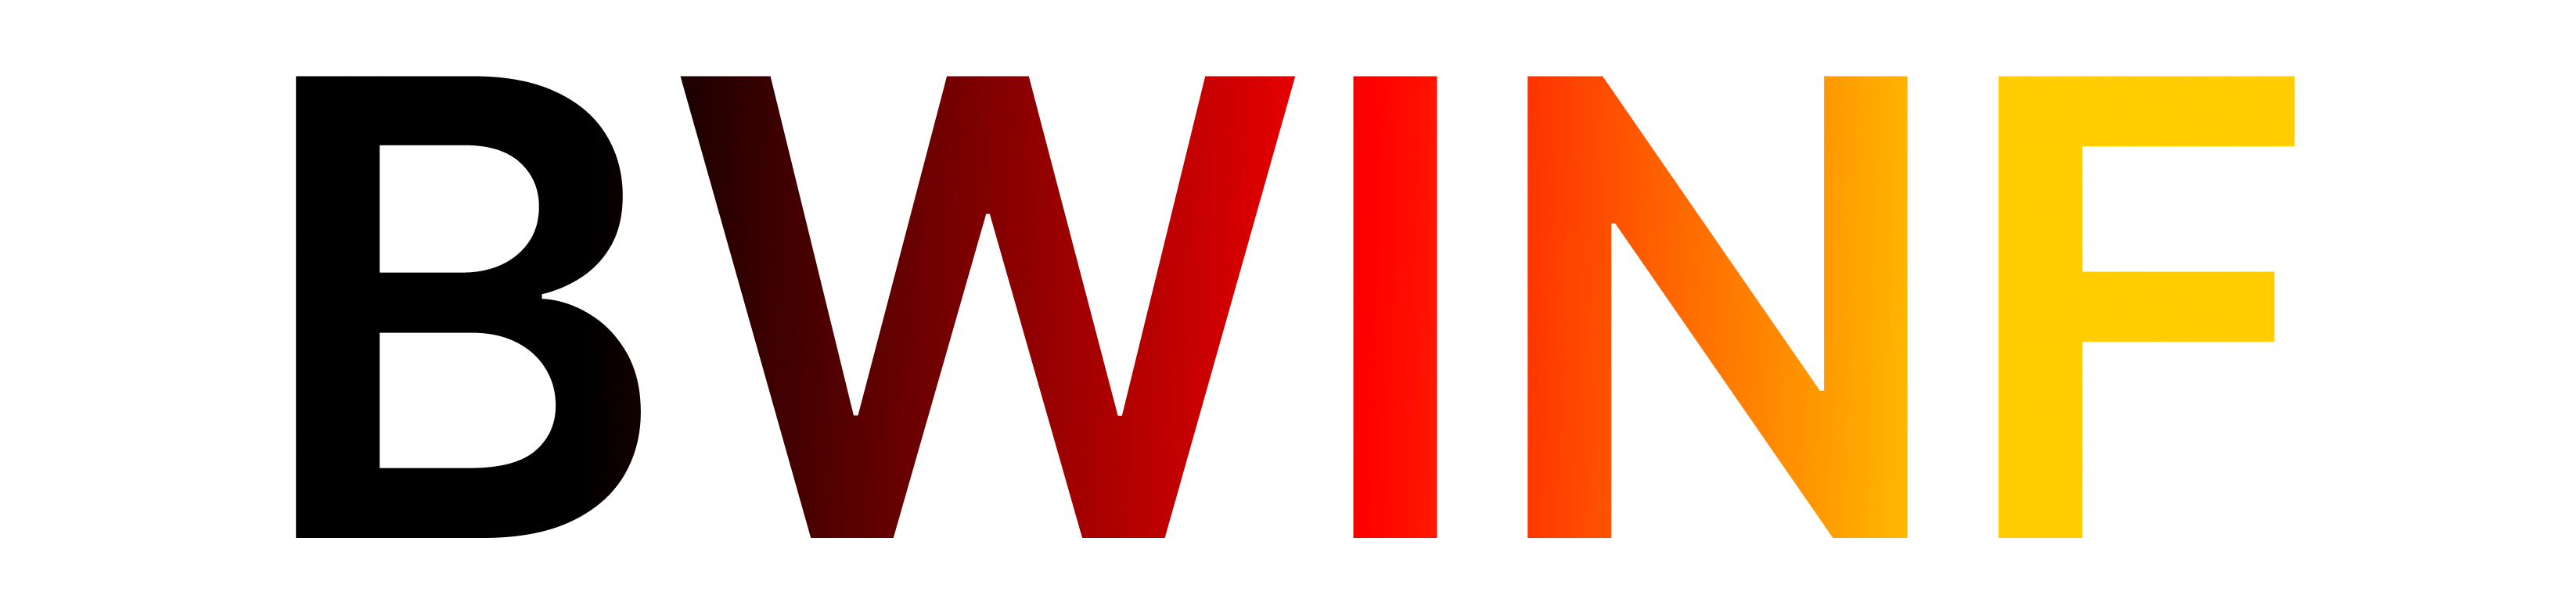 bwinf Logo